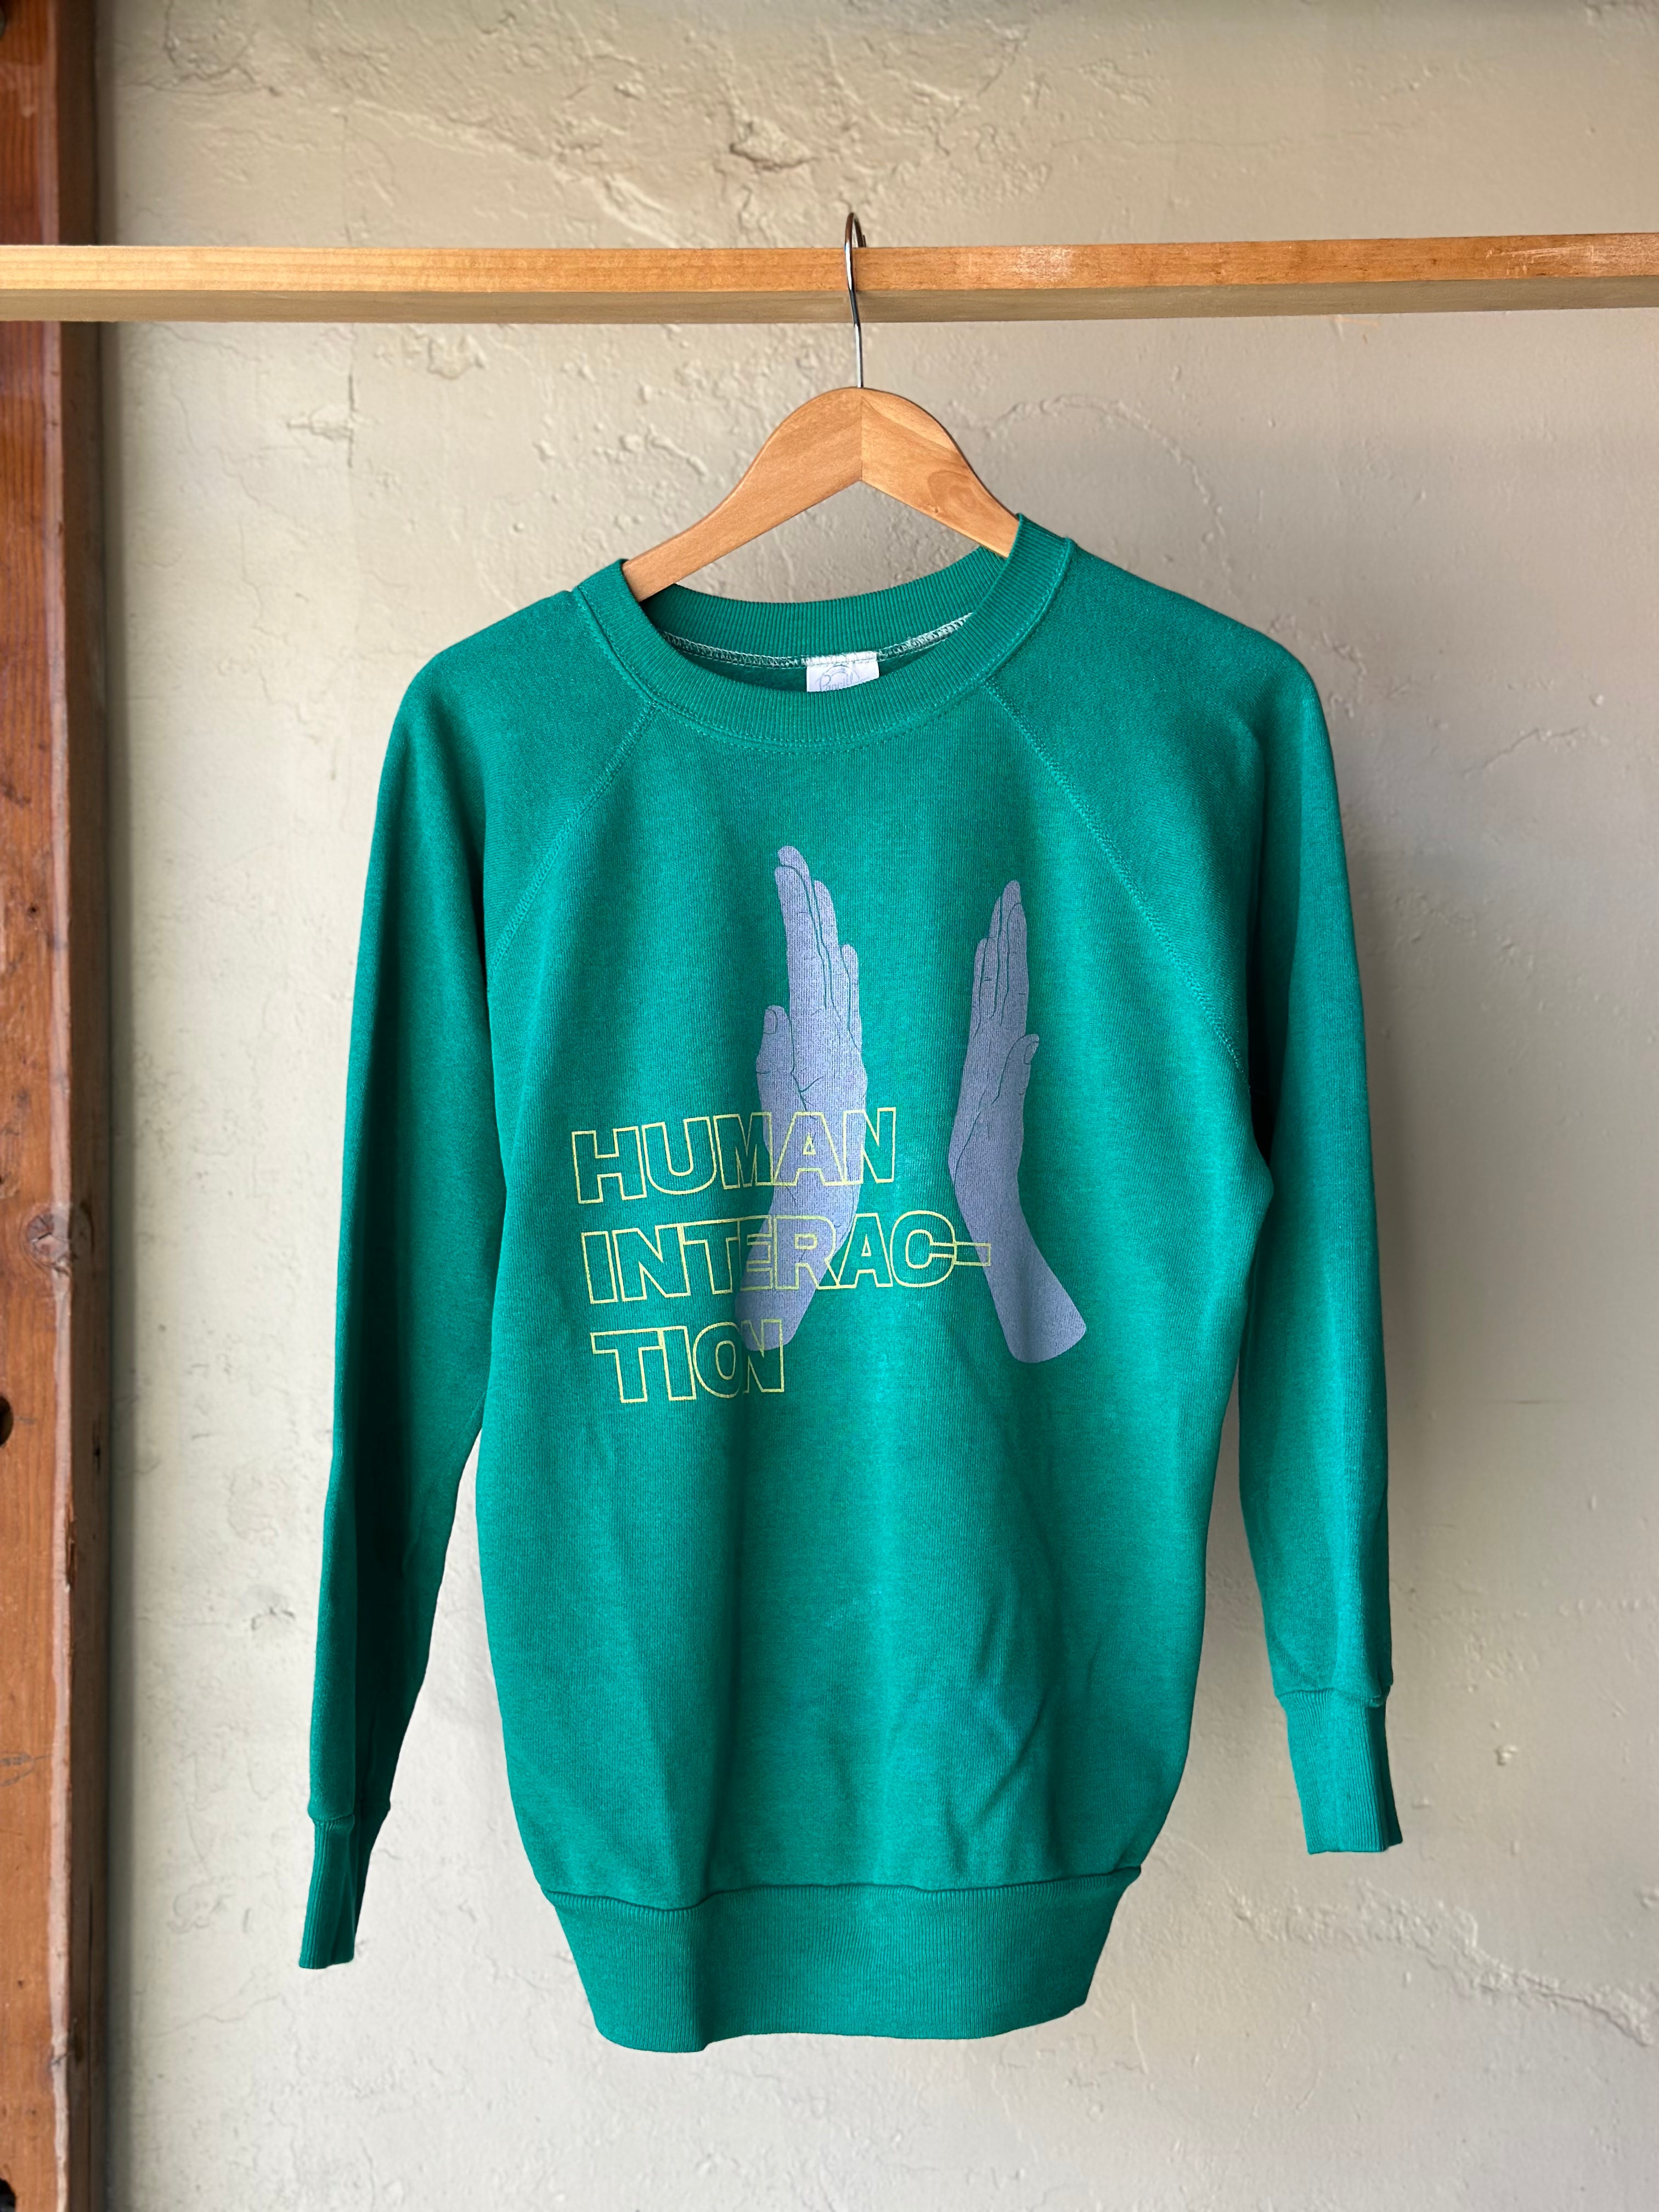 HI Vintage Sweatshirt Teal - LG